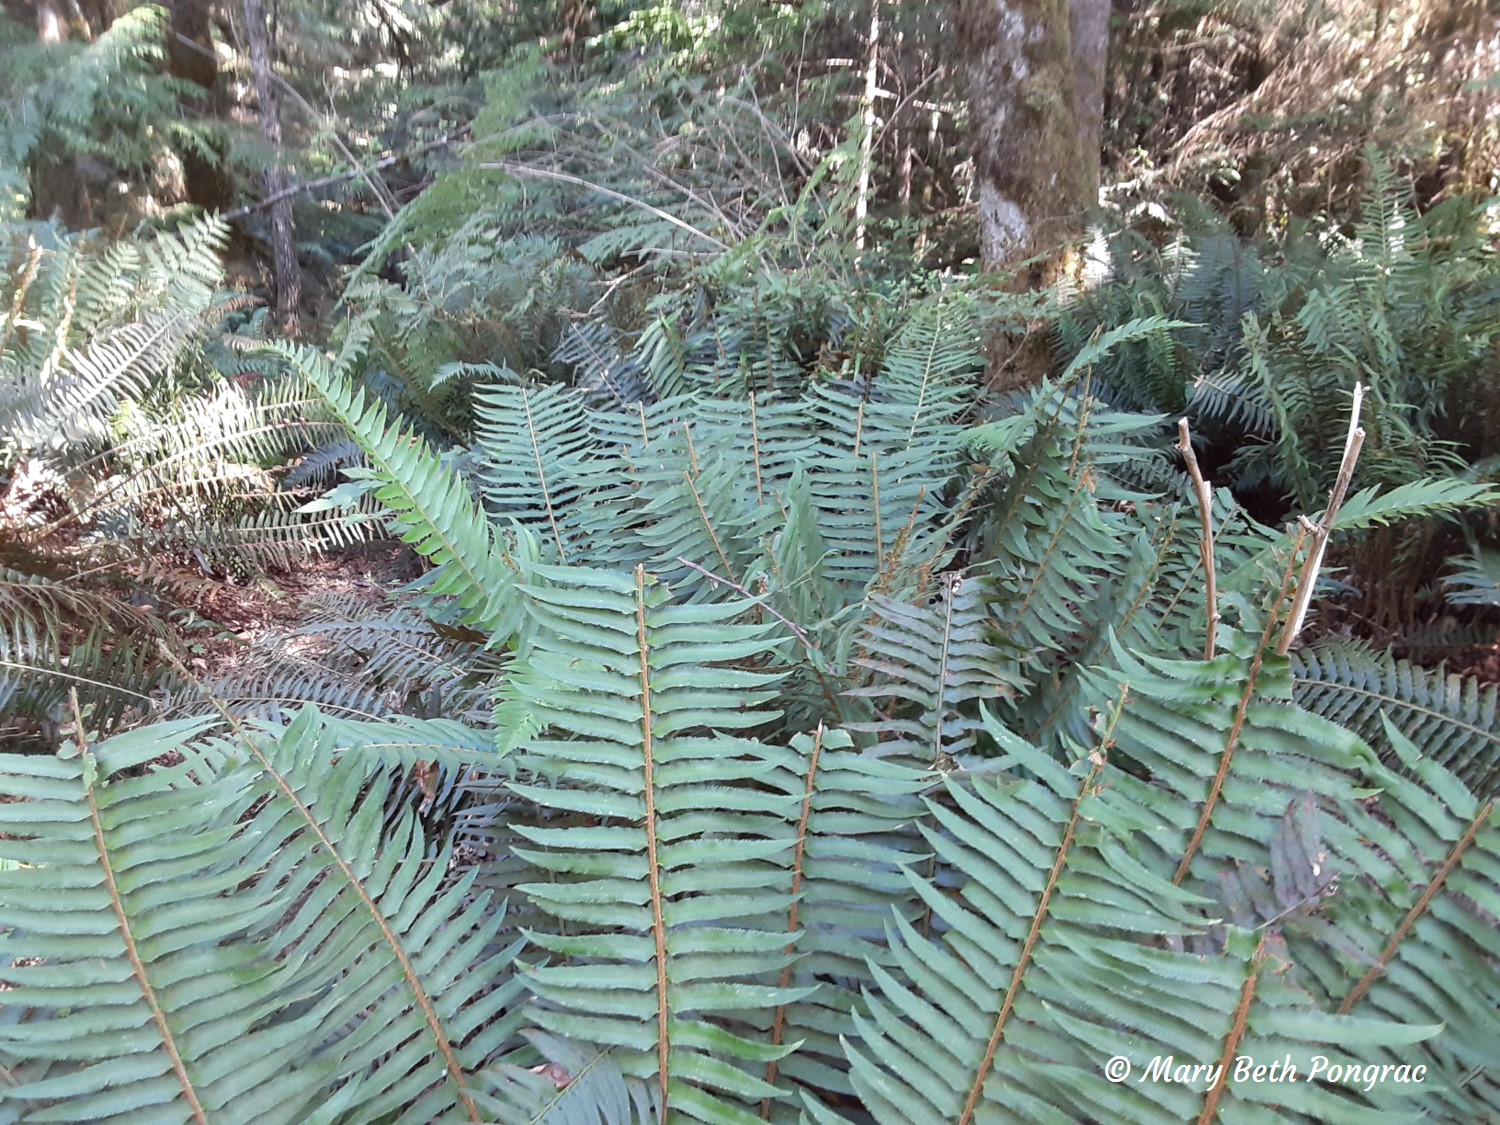 western sword fern browsed by roosevelt elk in British Columbia